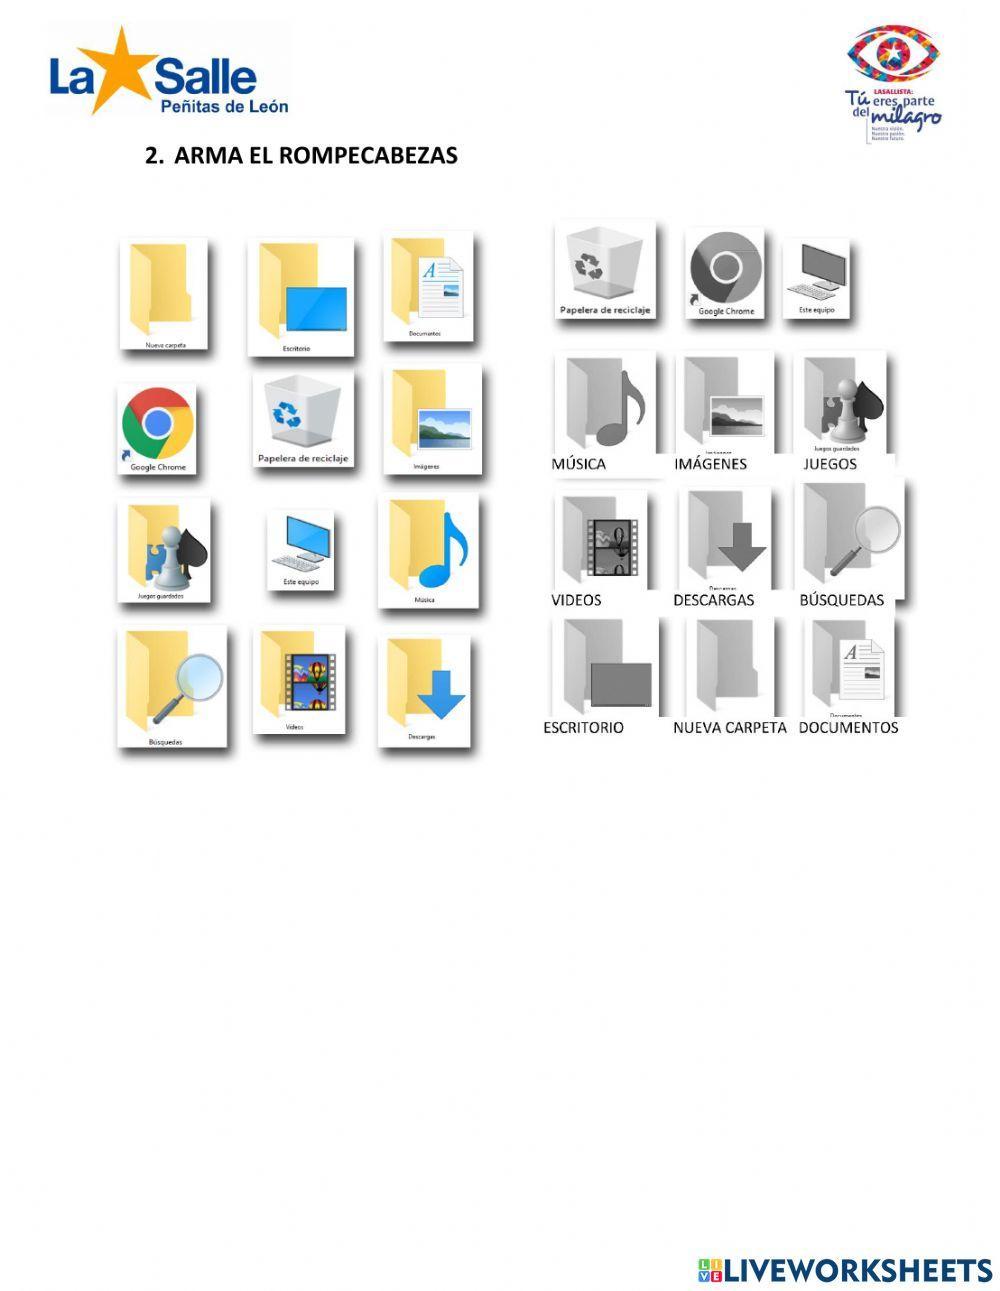 Iconos de Windows worksheet | Live Worksheets